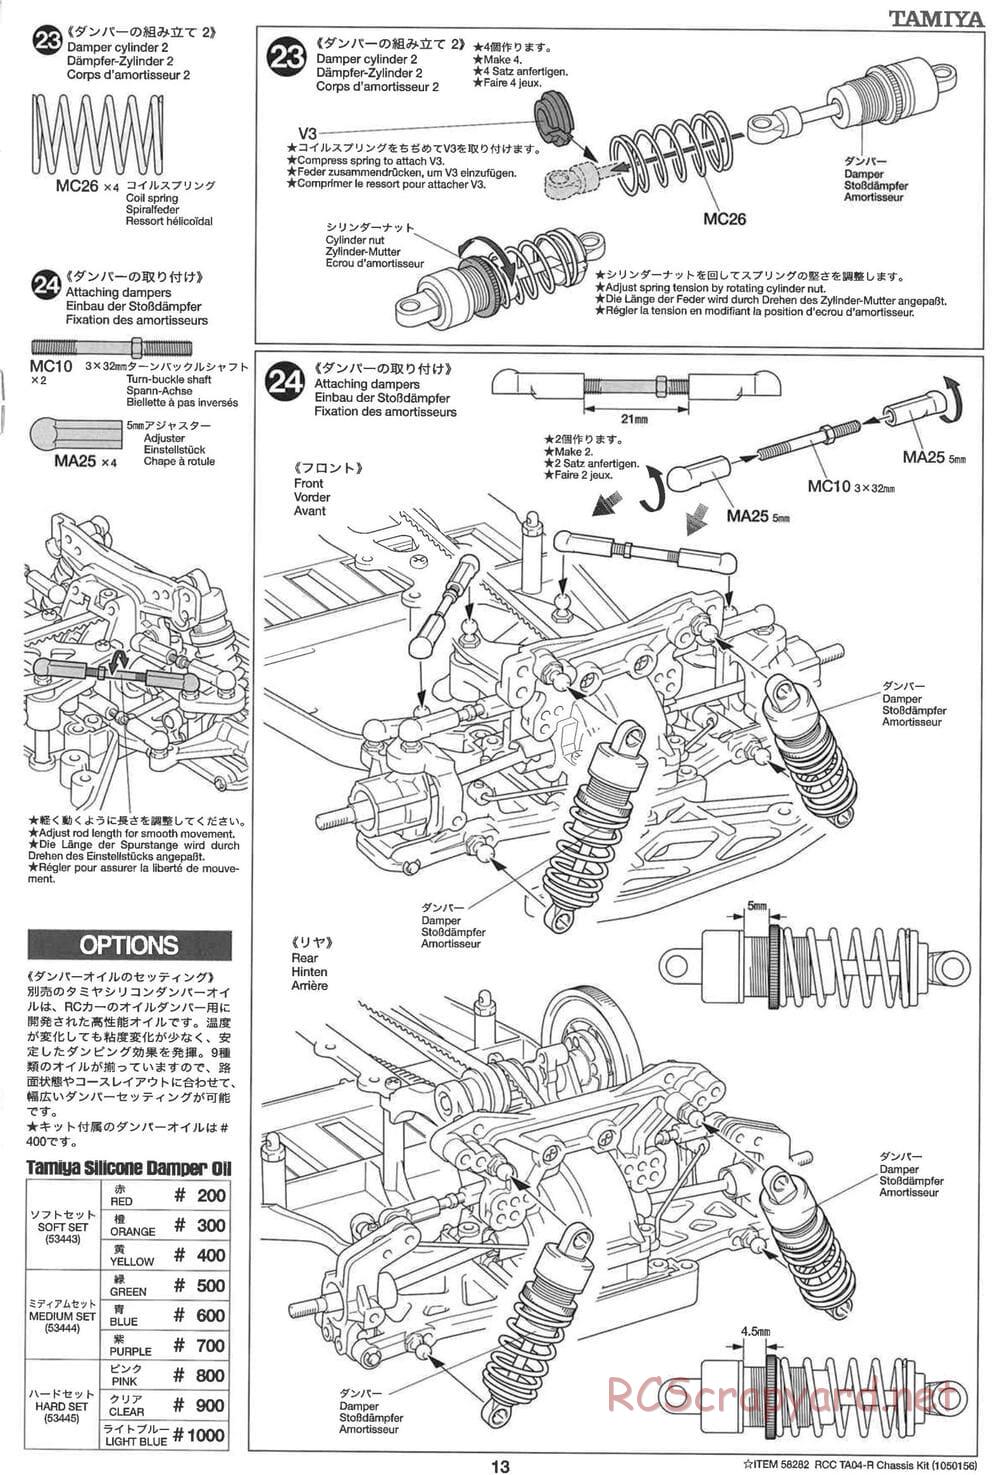 Tamiya - TA-04R Chassis - Manual - Page 13